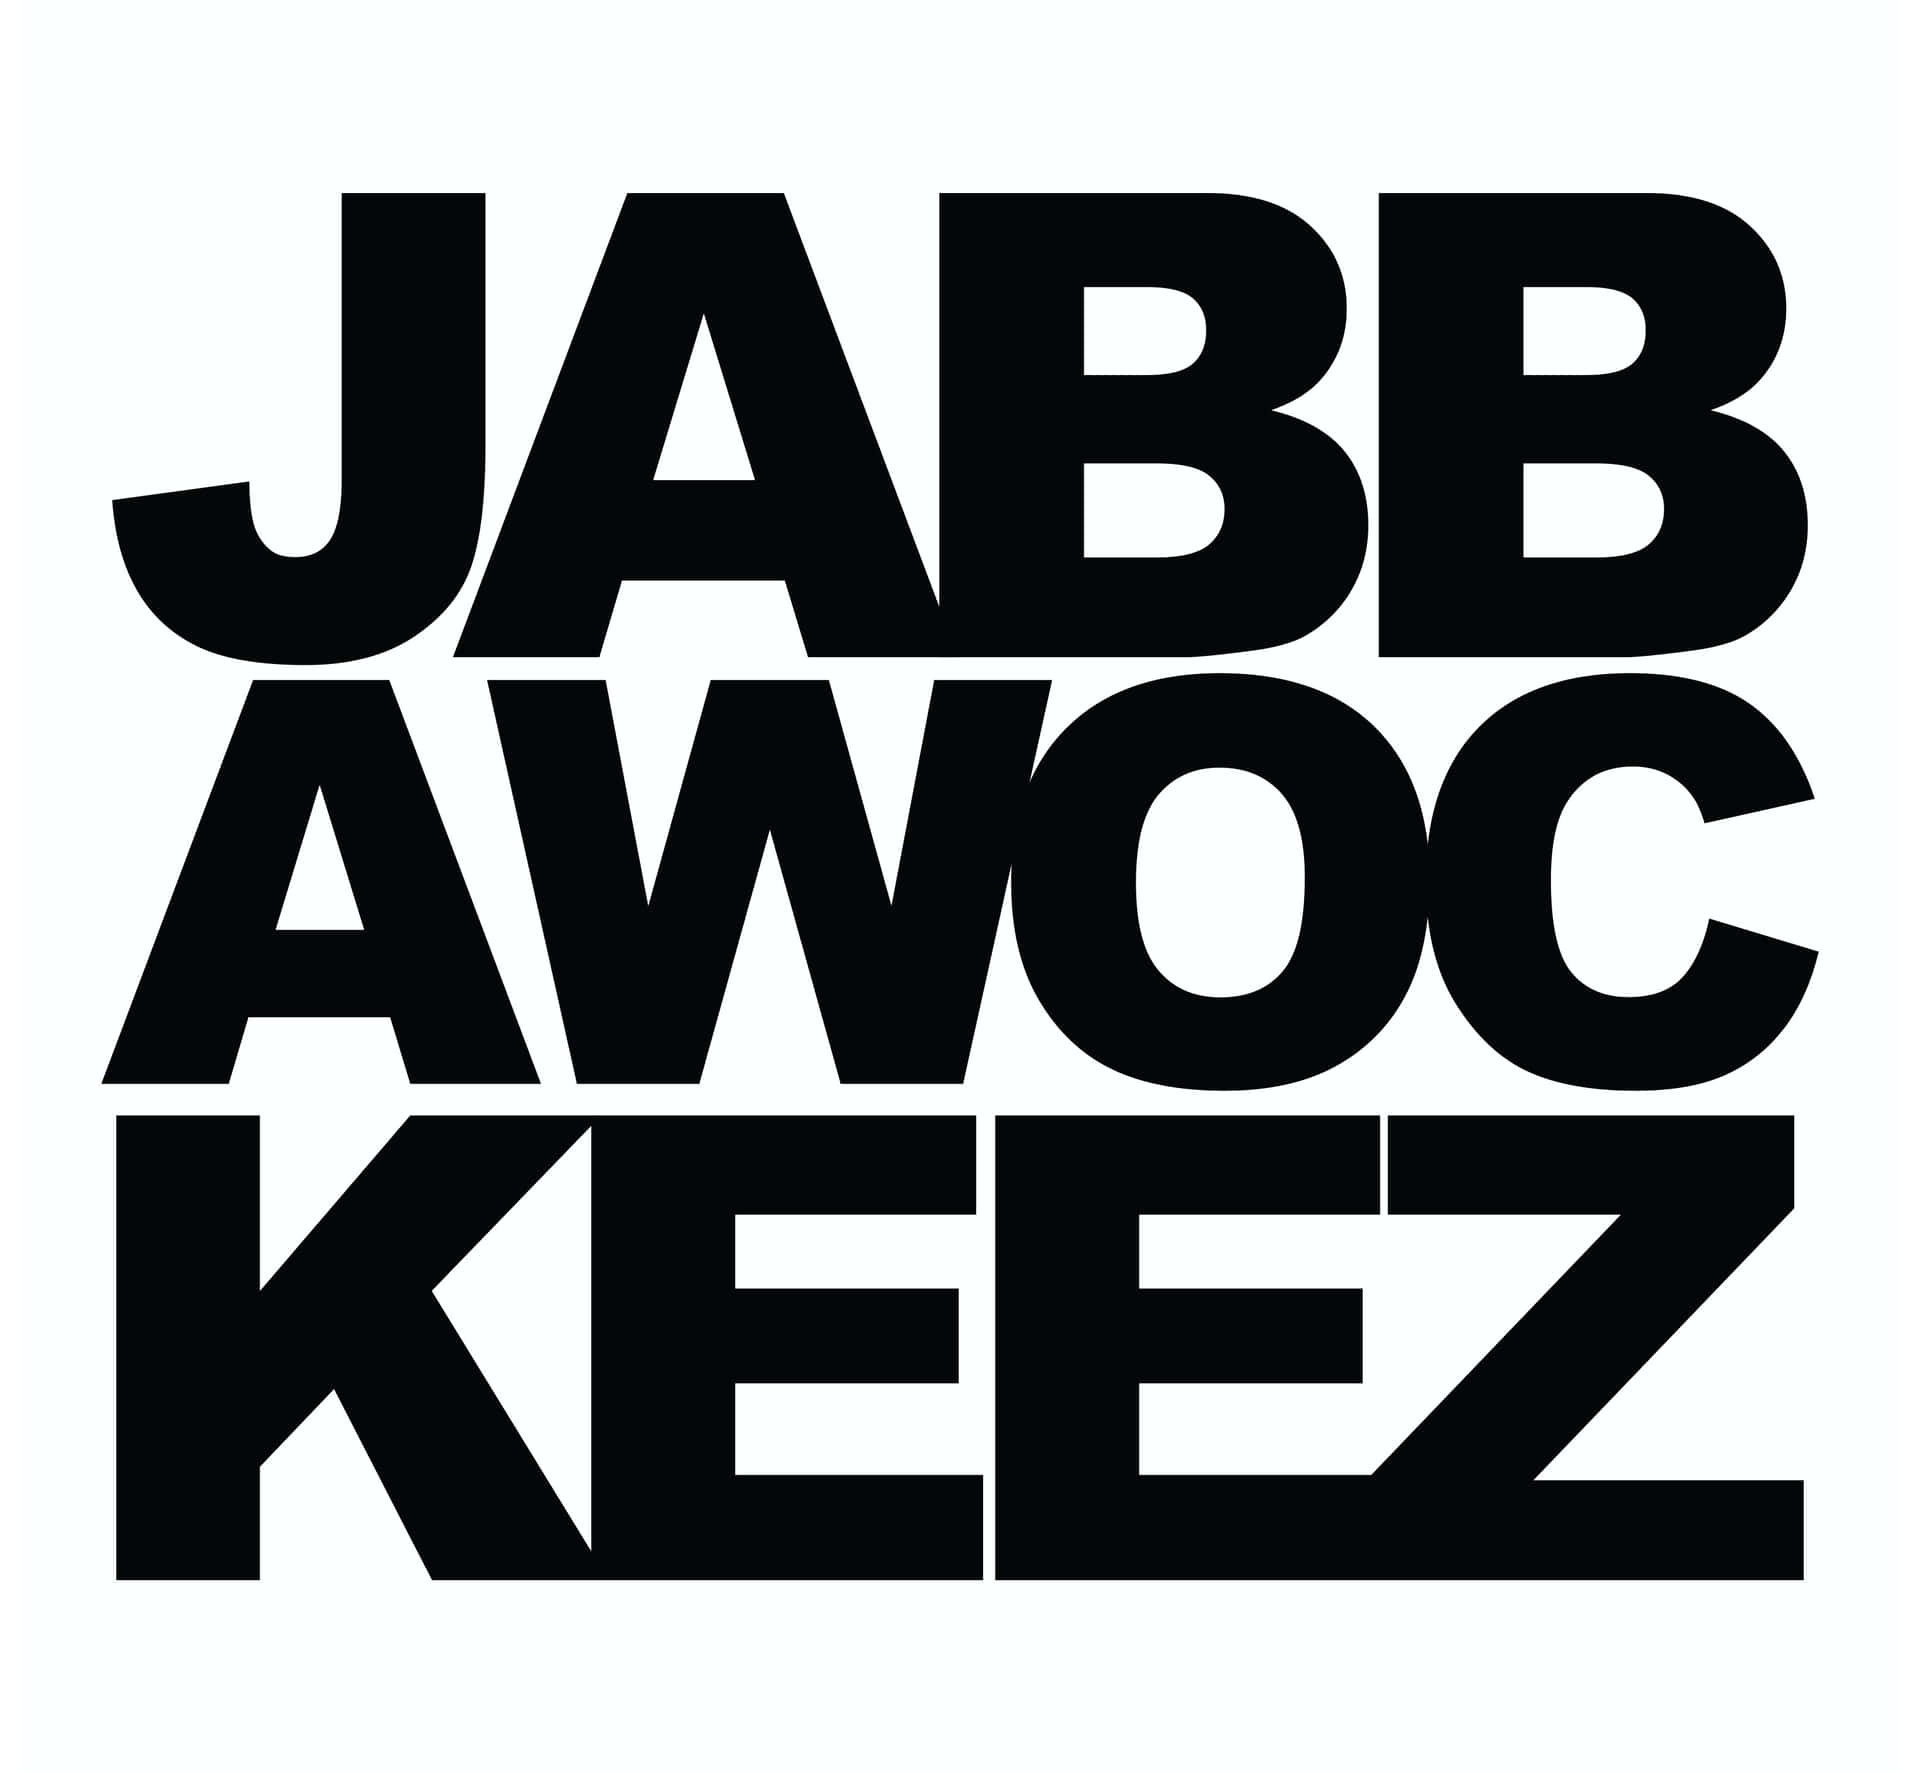 Black Jabbawockeez Log Word On White Background